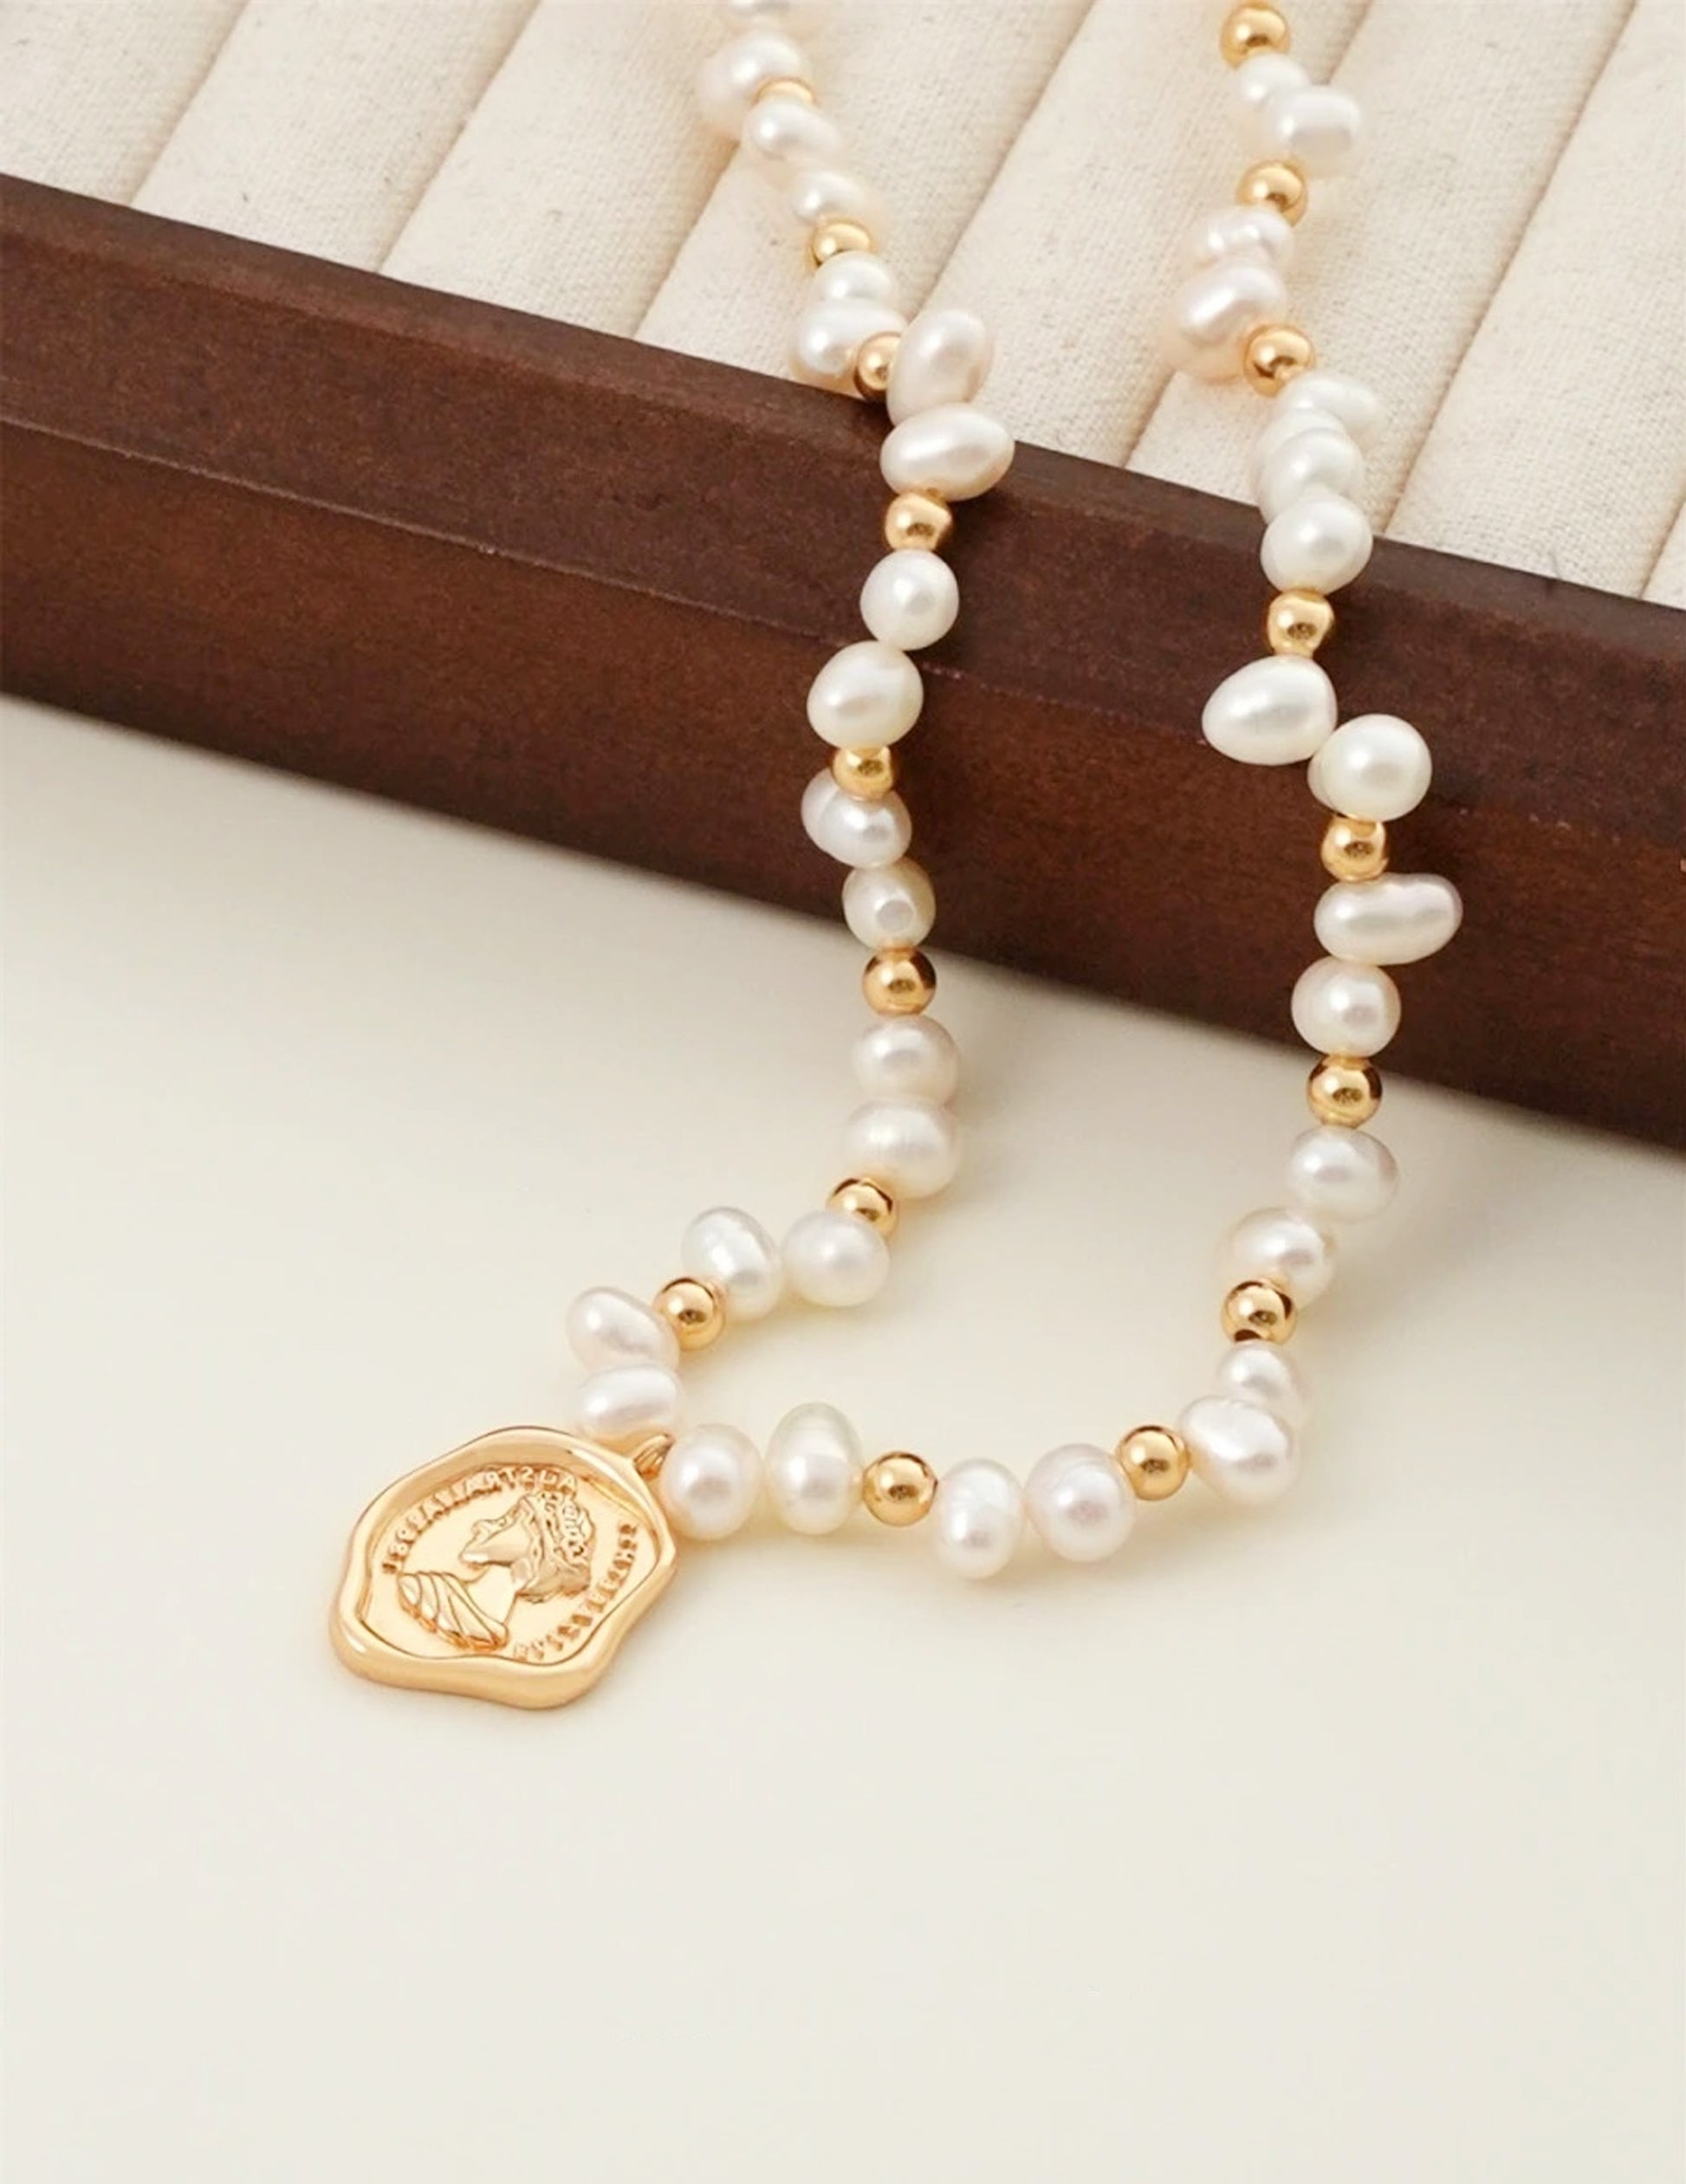 Queen's Emblem Vintage Necklace - CélineDor